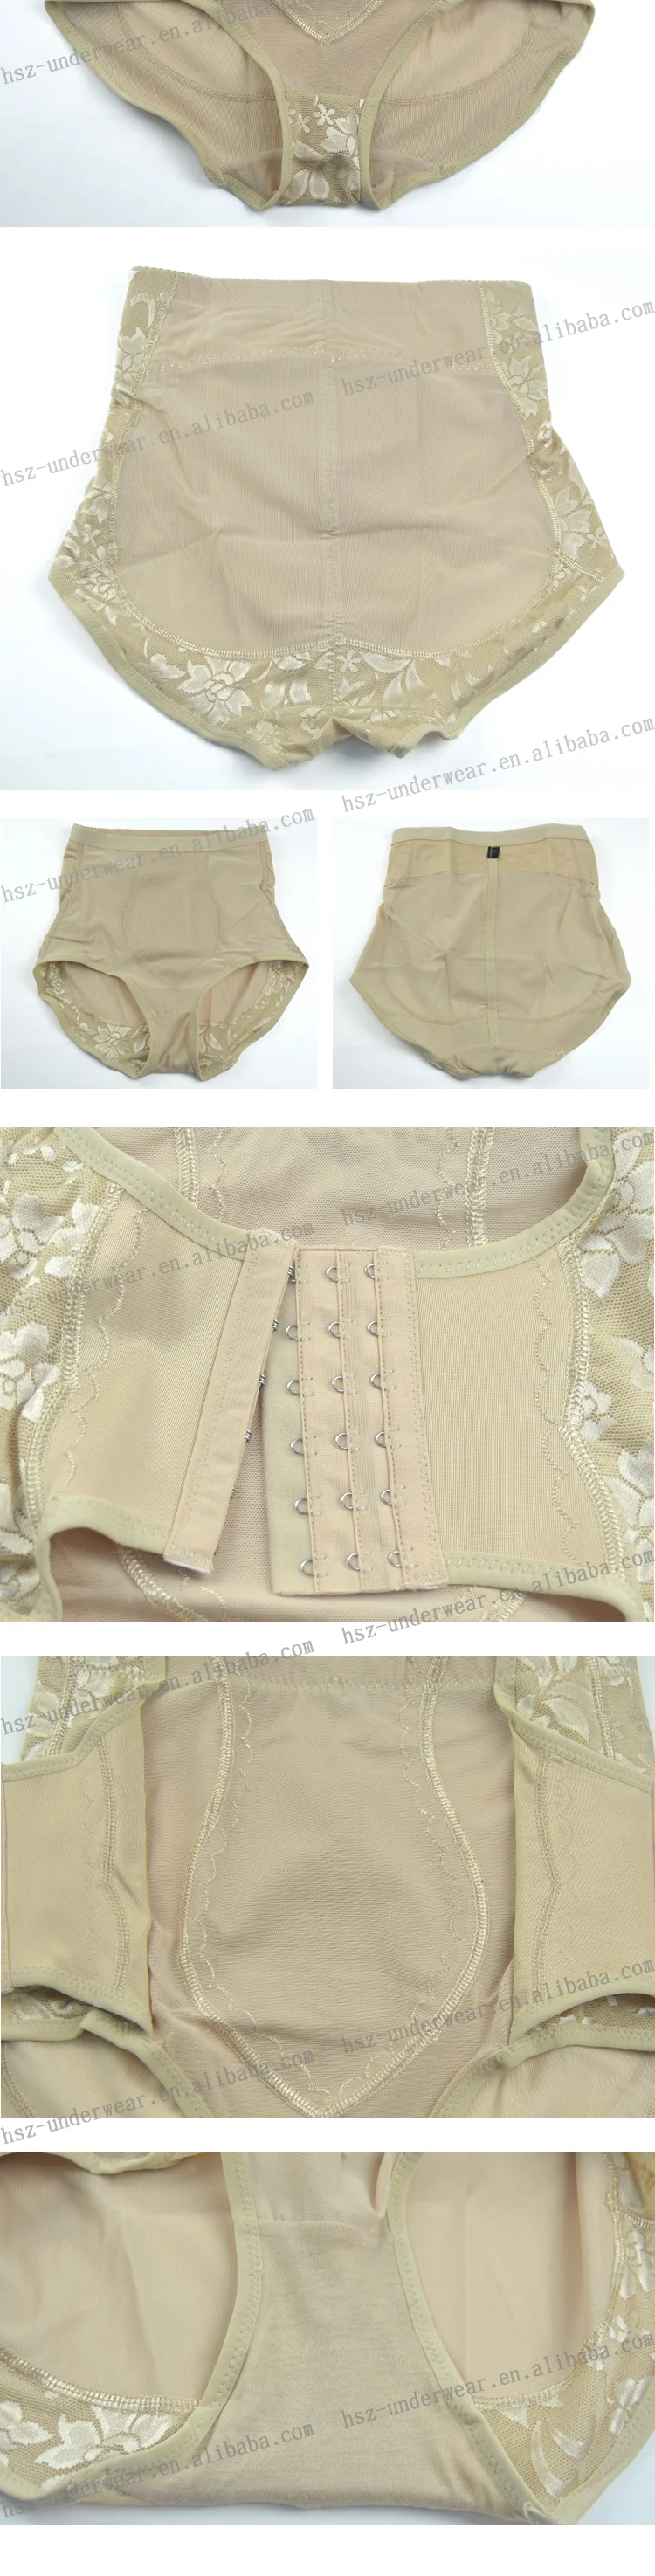 Hsz-8993 Fashion Design Mature Women In Panties Lace Panties Old Women ...